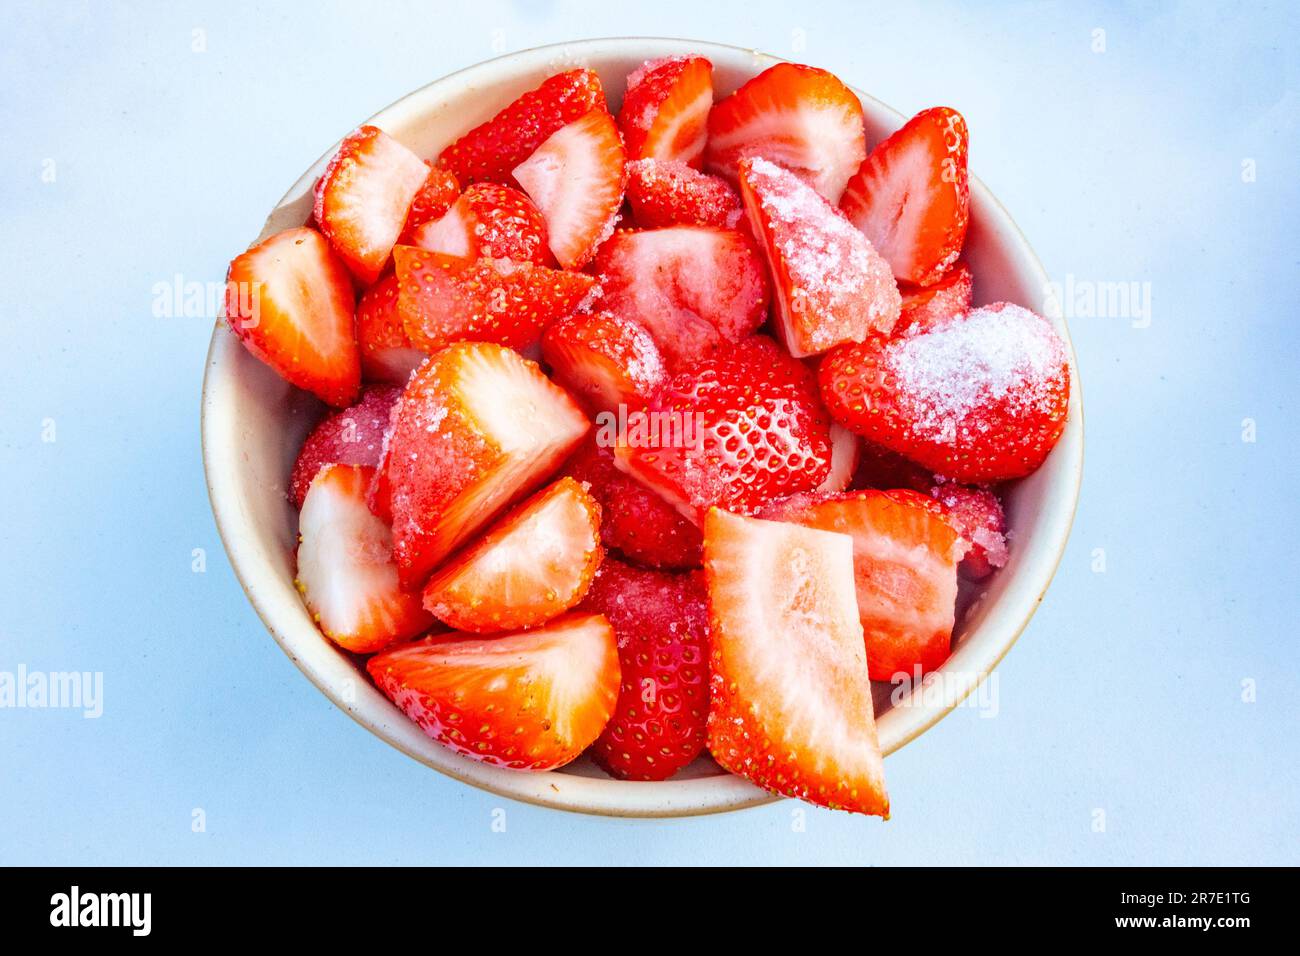 Vista ravvicinata di una ciotola di fragole fresche, affettate e cosparse di zucchero per farle macerare isolate su uno sfondo bianco Foto Stock